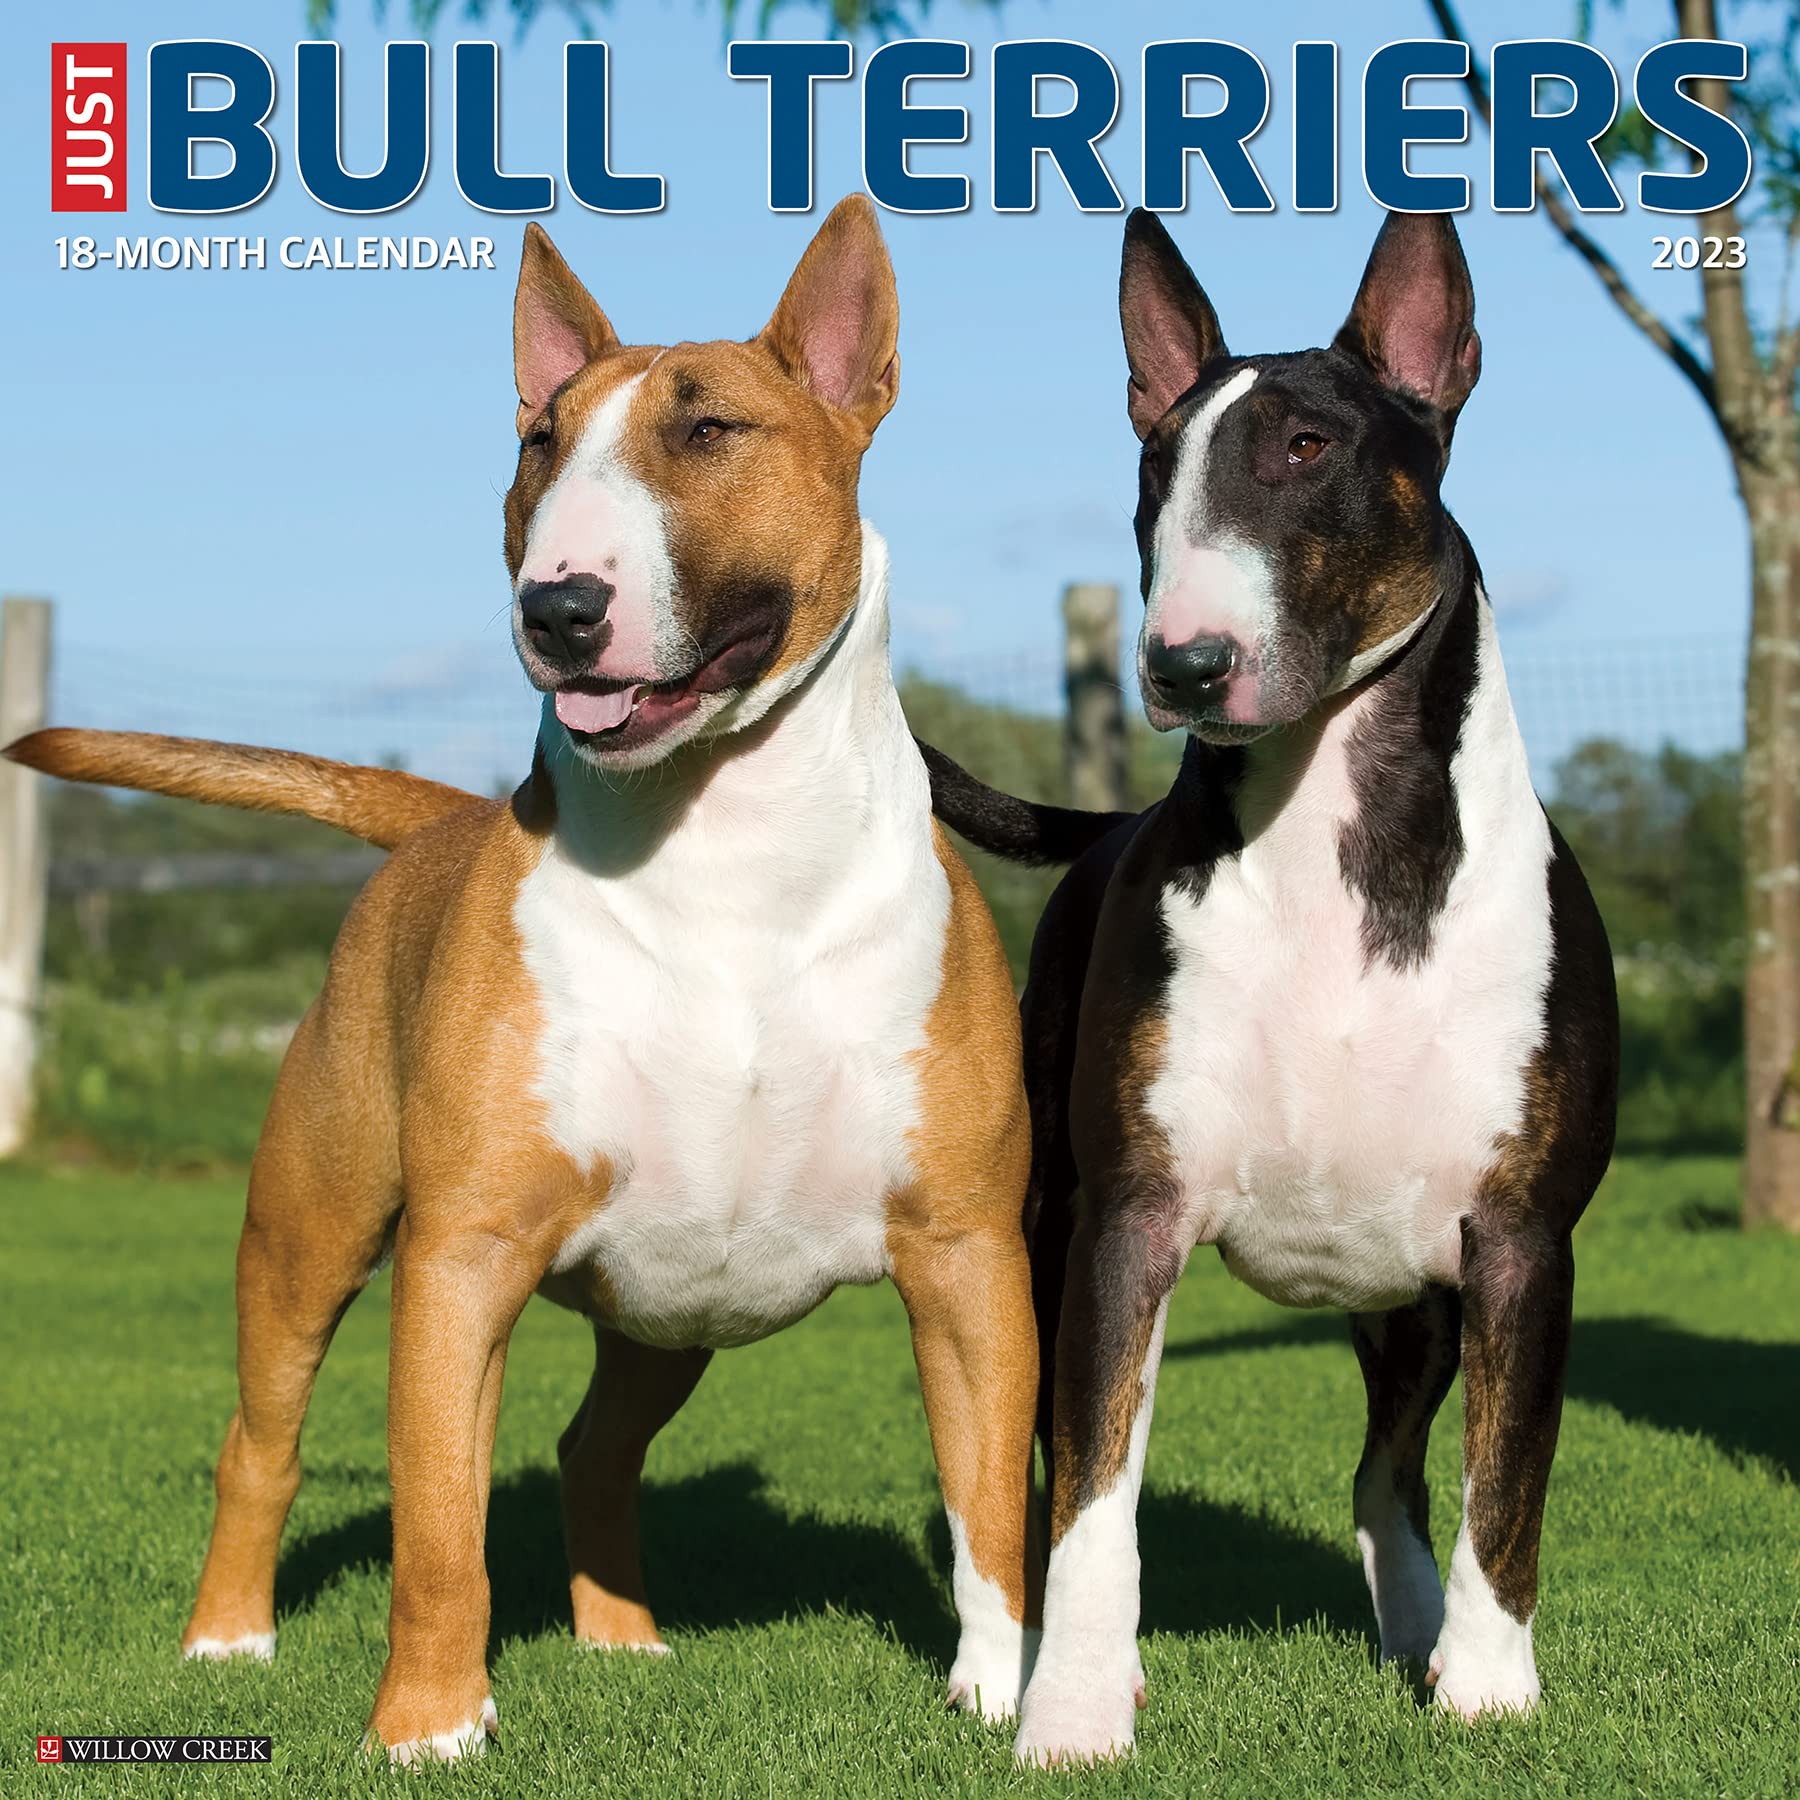 Calendari Willow Creek Press - Just Bull Terriers 2023 Wall Calendar NUOVO SIGILLATO, EDIZIONE DEL 15/08/2022 SUBITO DISPONIBILE